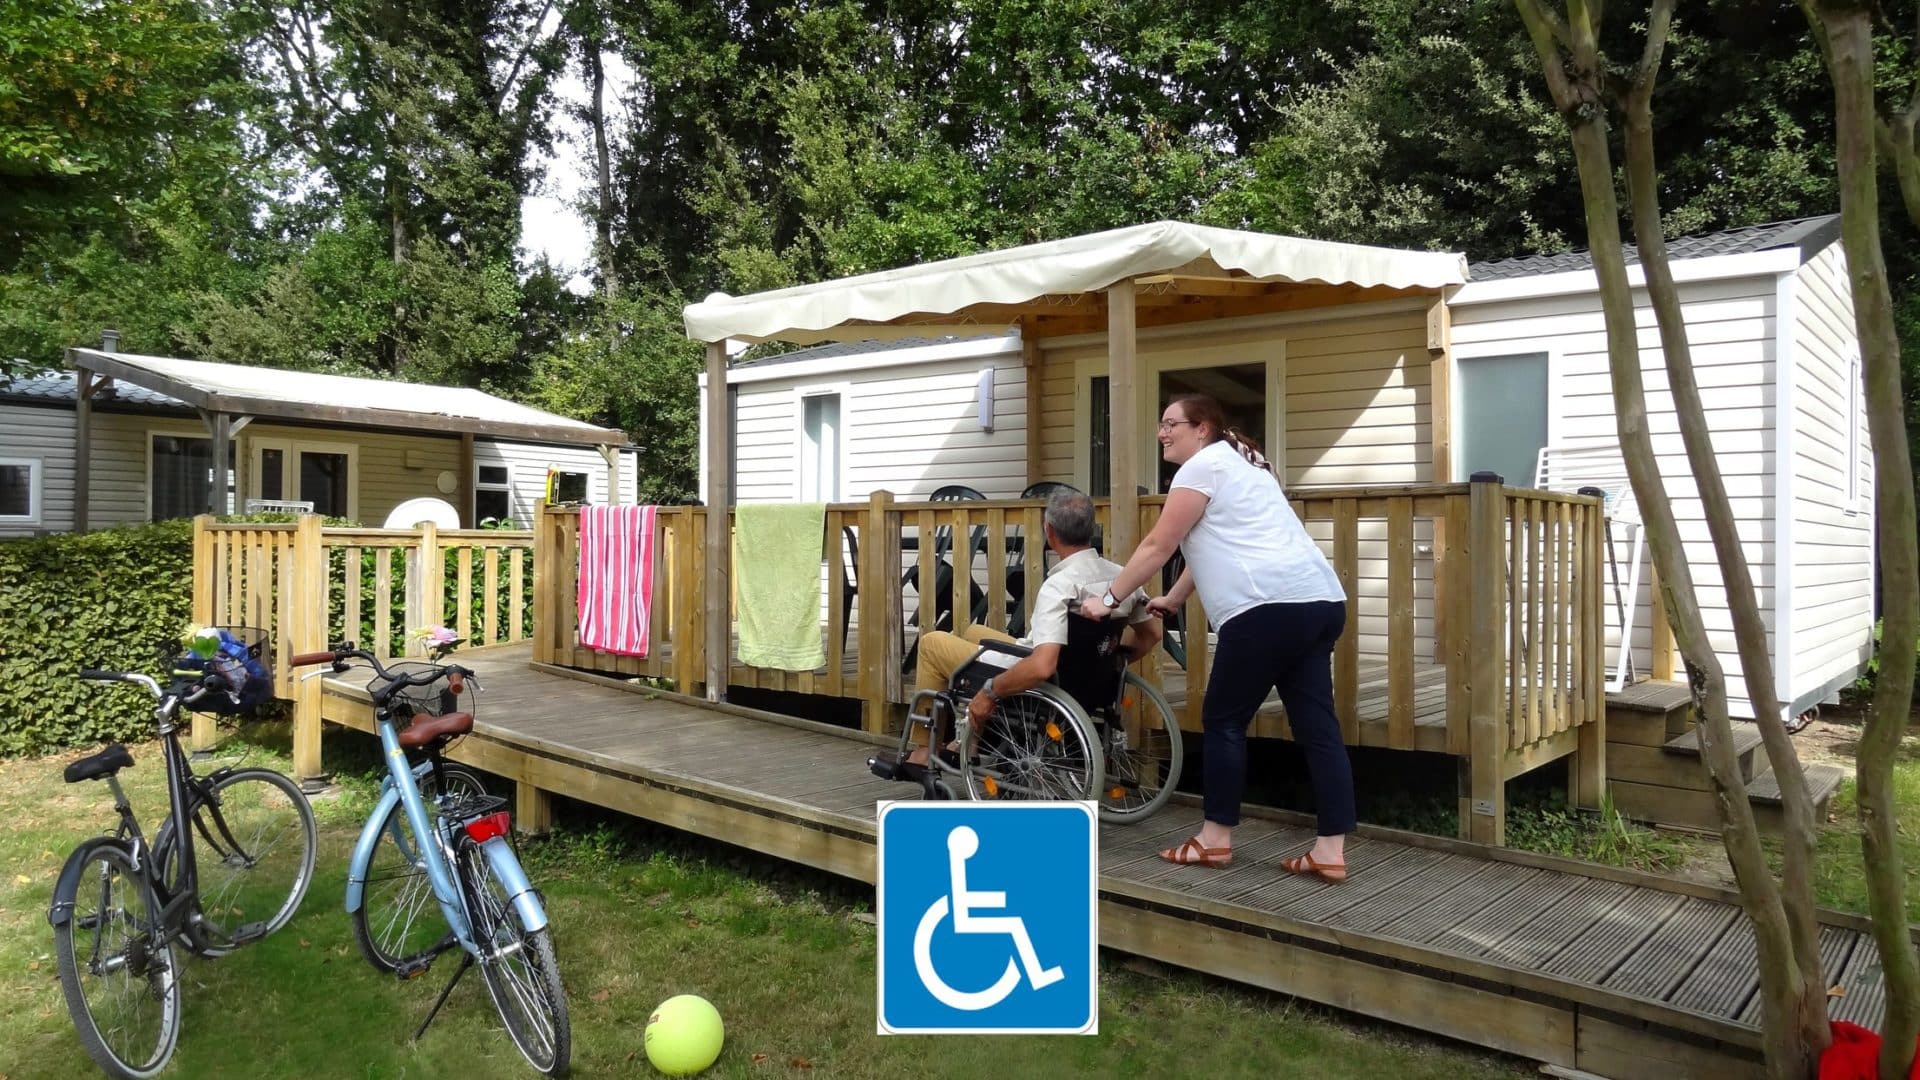 Camping La Garangeoire - Mobilheim Life für mendeschen mit behinderungen